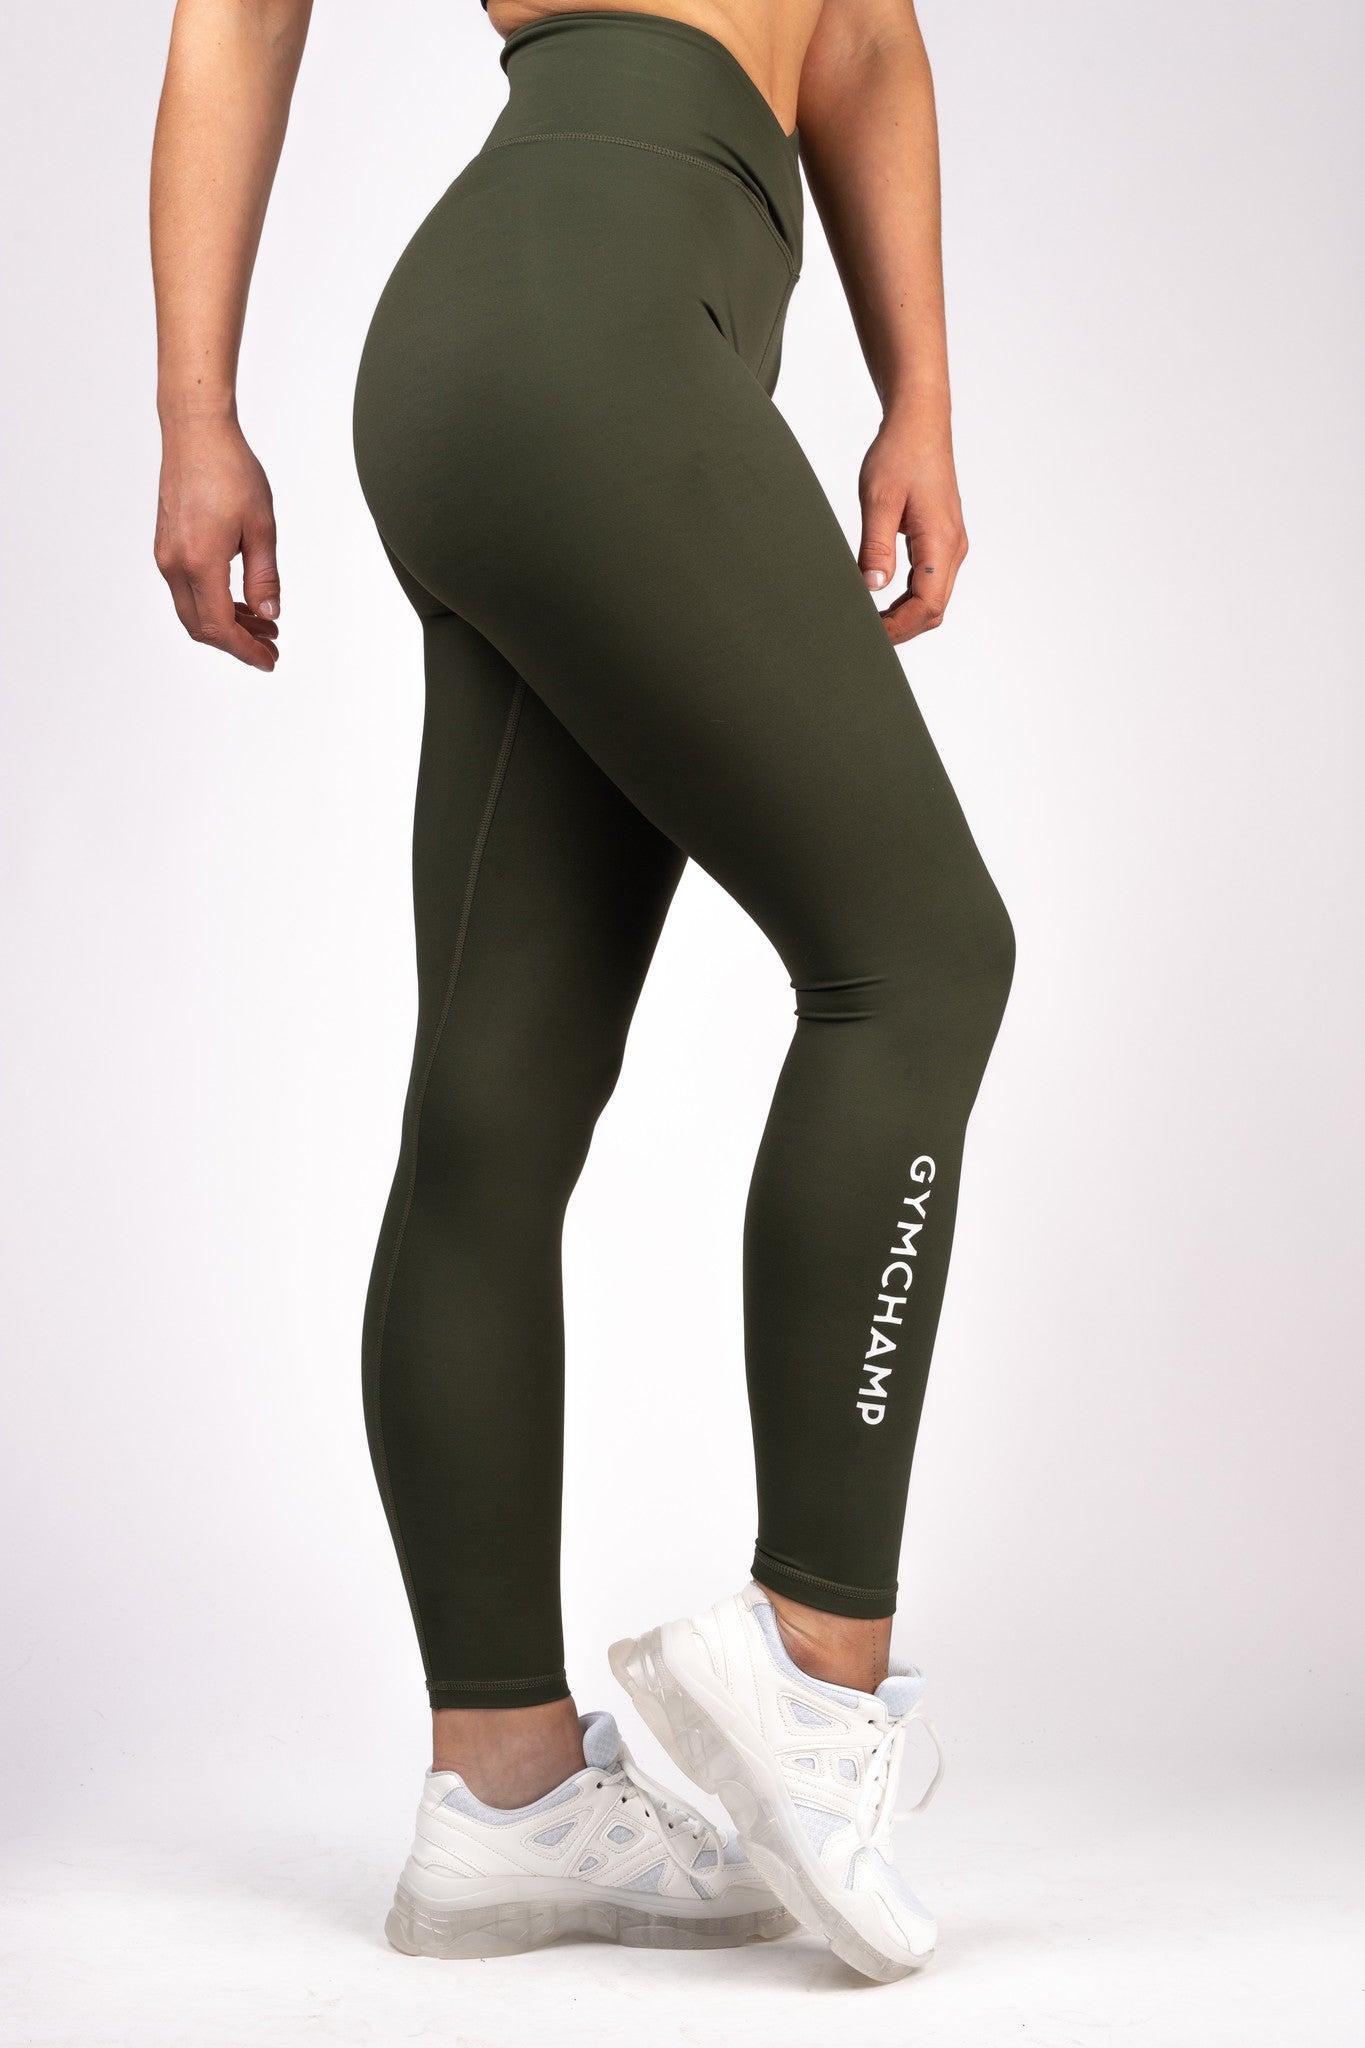 Classic High Waist Legging - Army Green – Gymchampsportswear